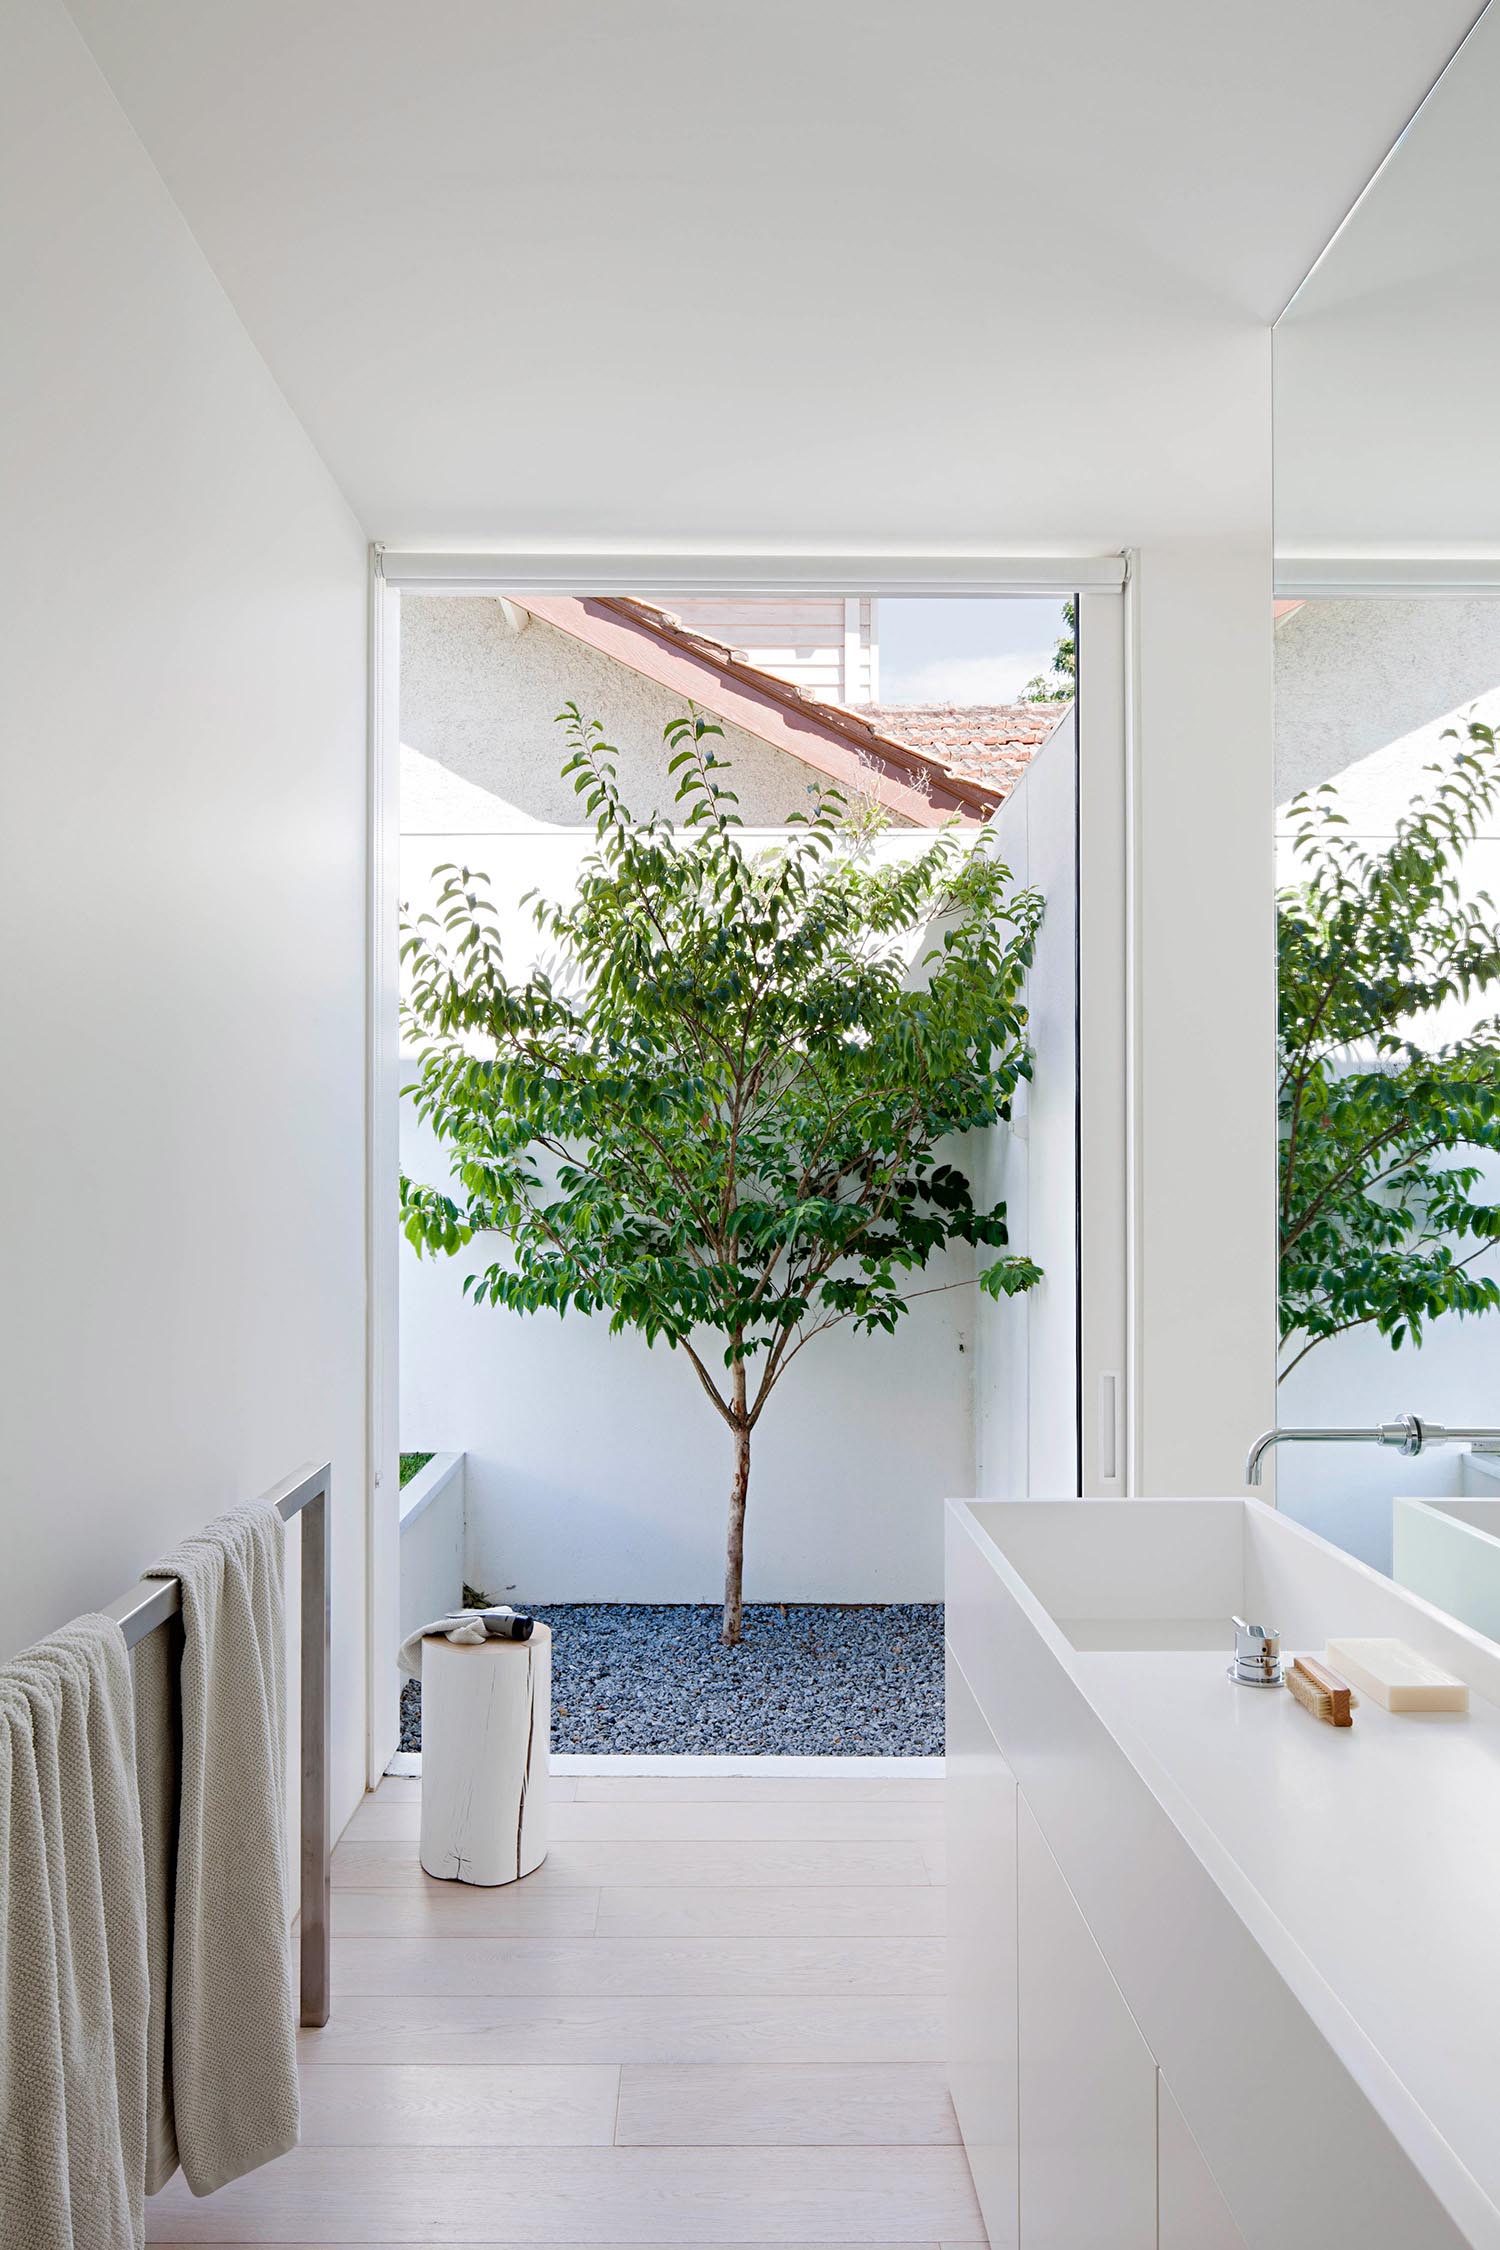 Современная белая ванная комната с большим окном, минималистичным белым туалетным столиком и металлической вешалкой для полотенец.